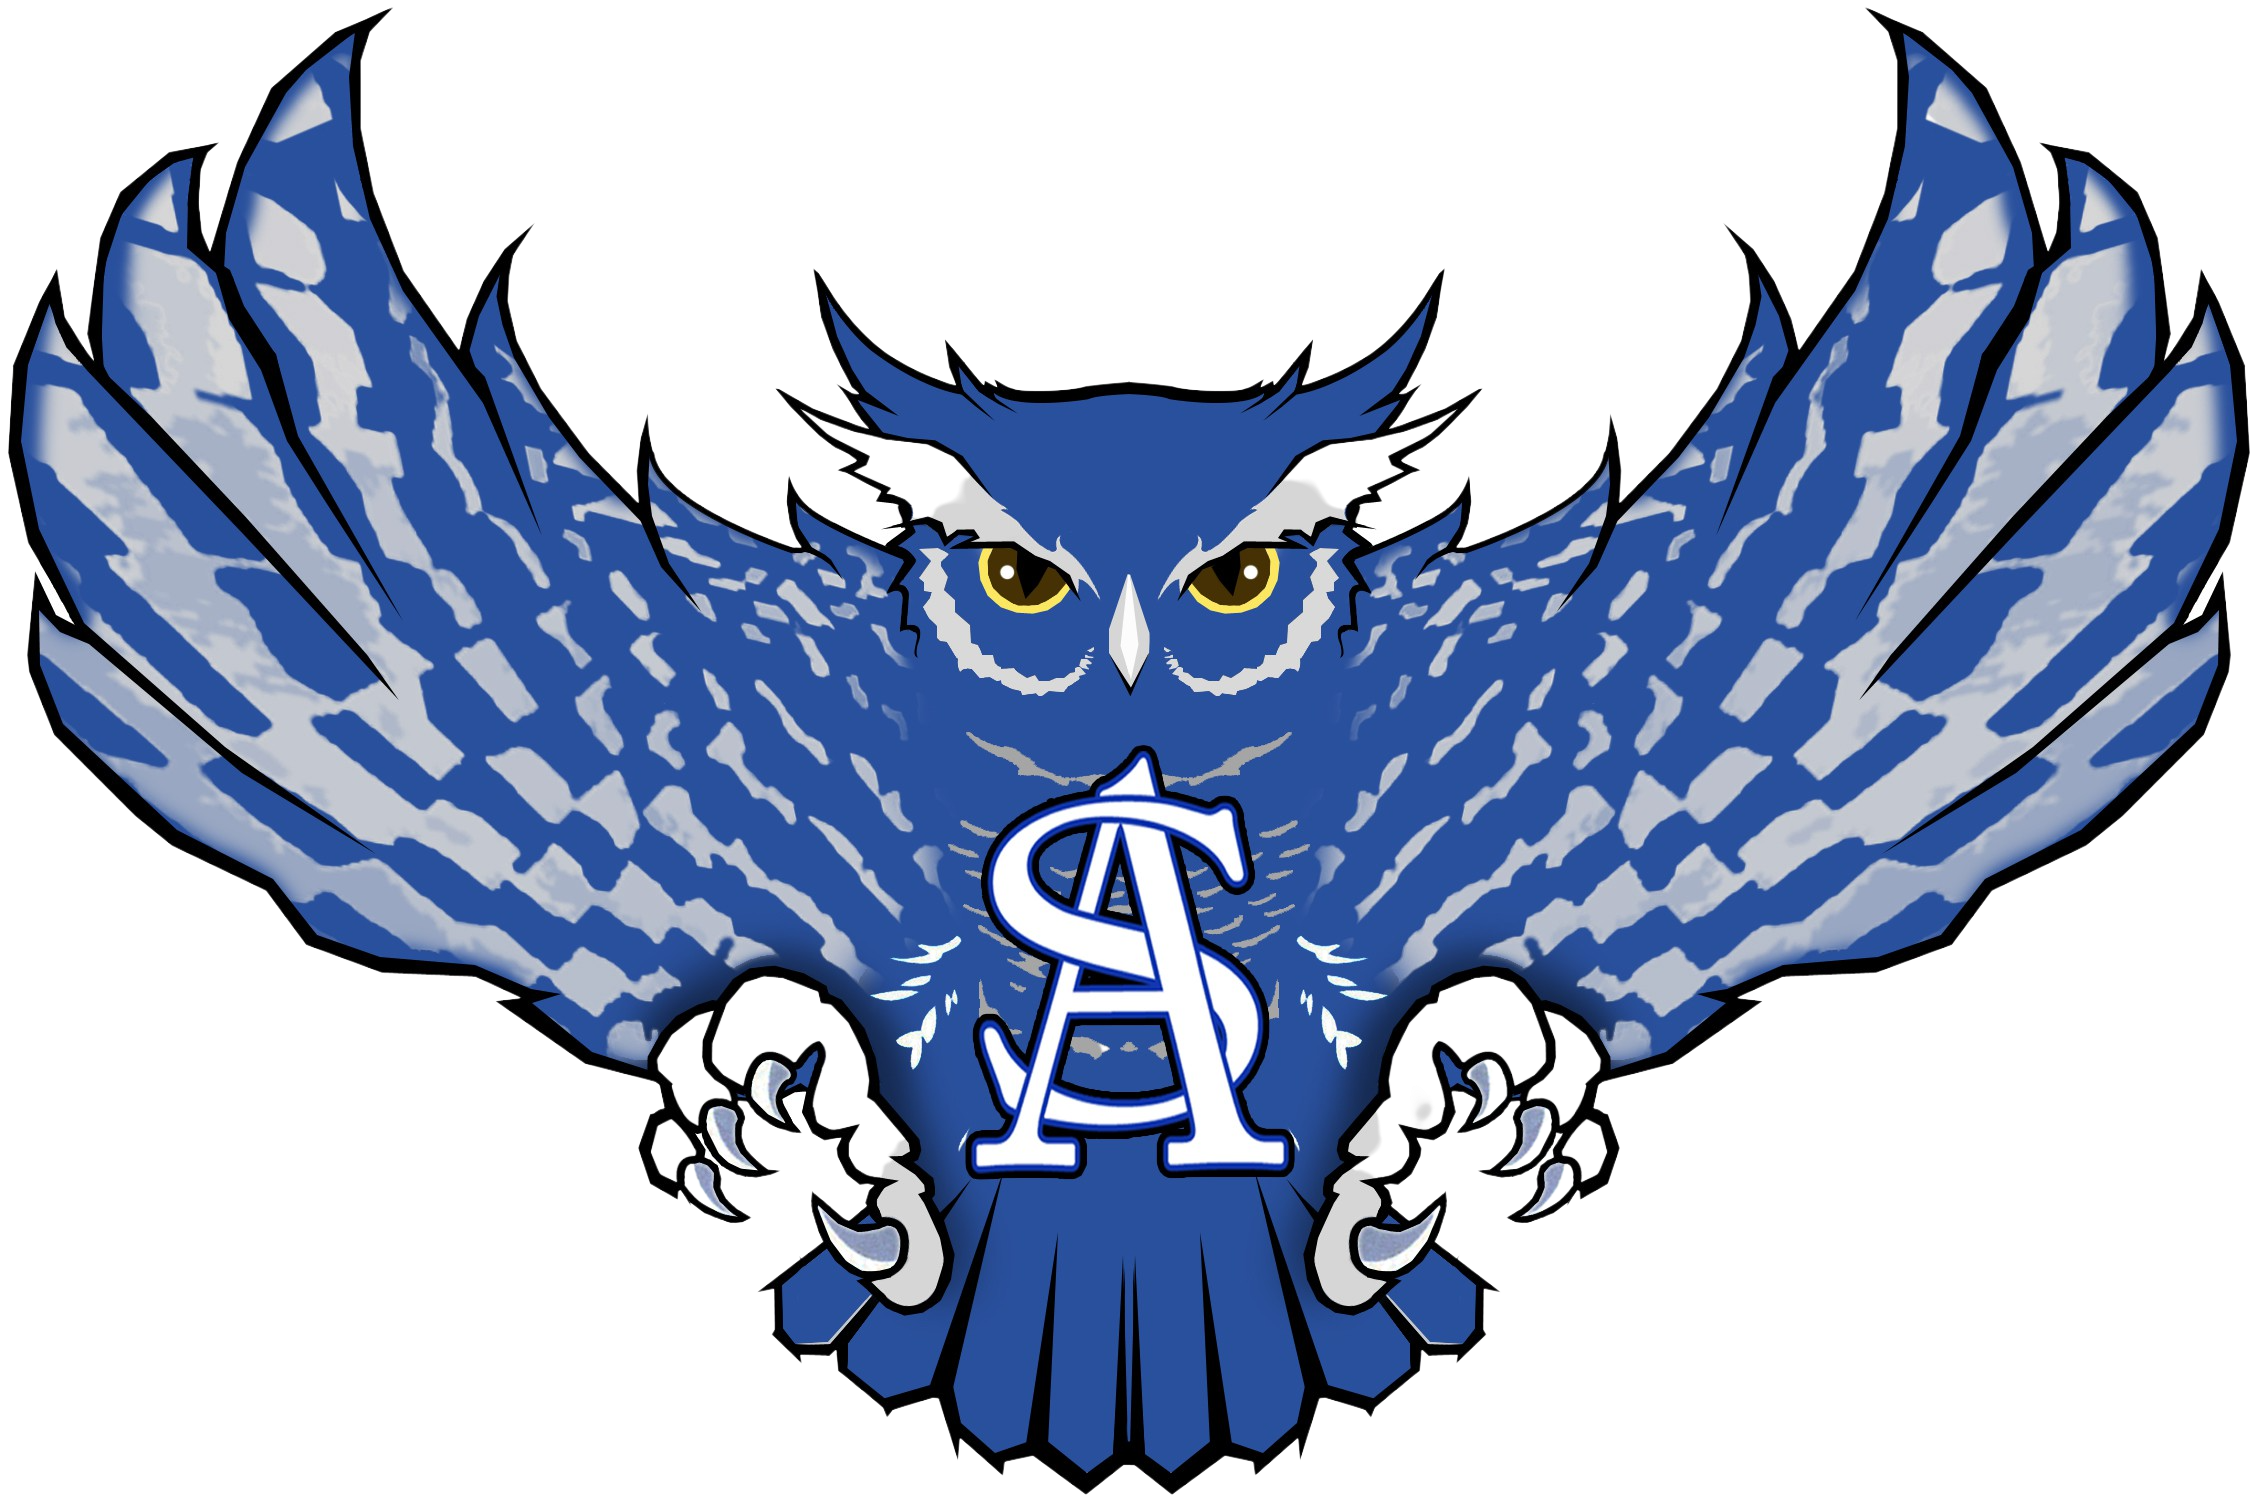 ascisd logo